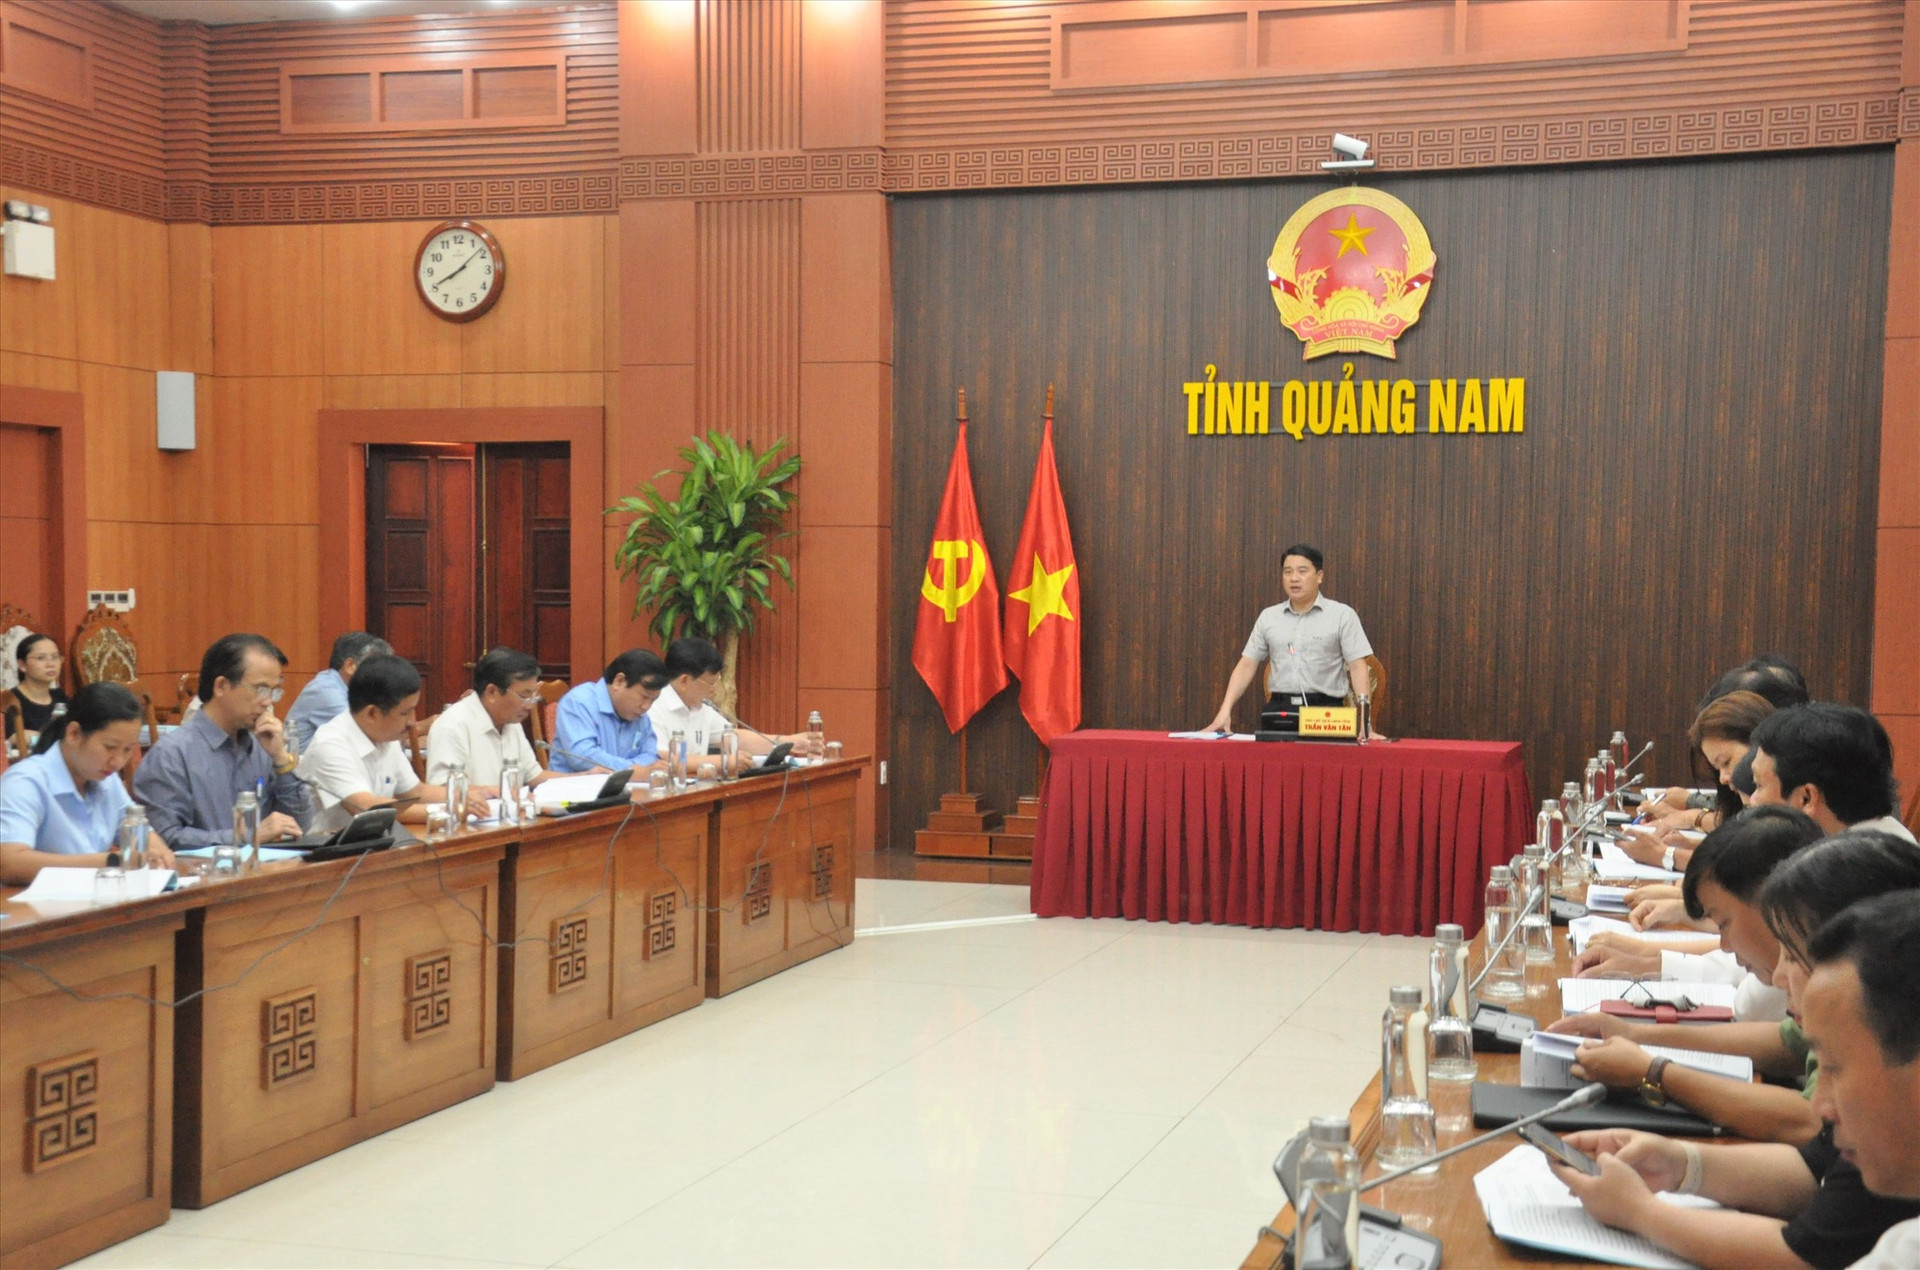 Phó Chủ tịch UBND tỉnh Trần Văn Tân đề nghị các sở, ban, ngành, địa phương tiếp tục rà soát các công việc để tổ chức kỳ thi an toàn, nghiêm túc. Ảnh: X.P